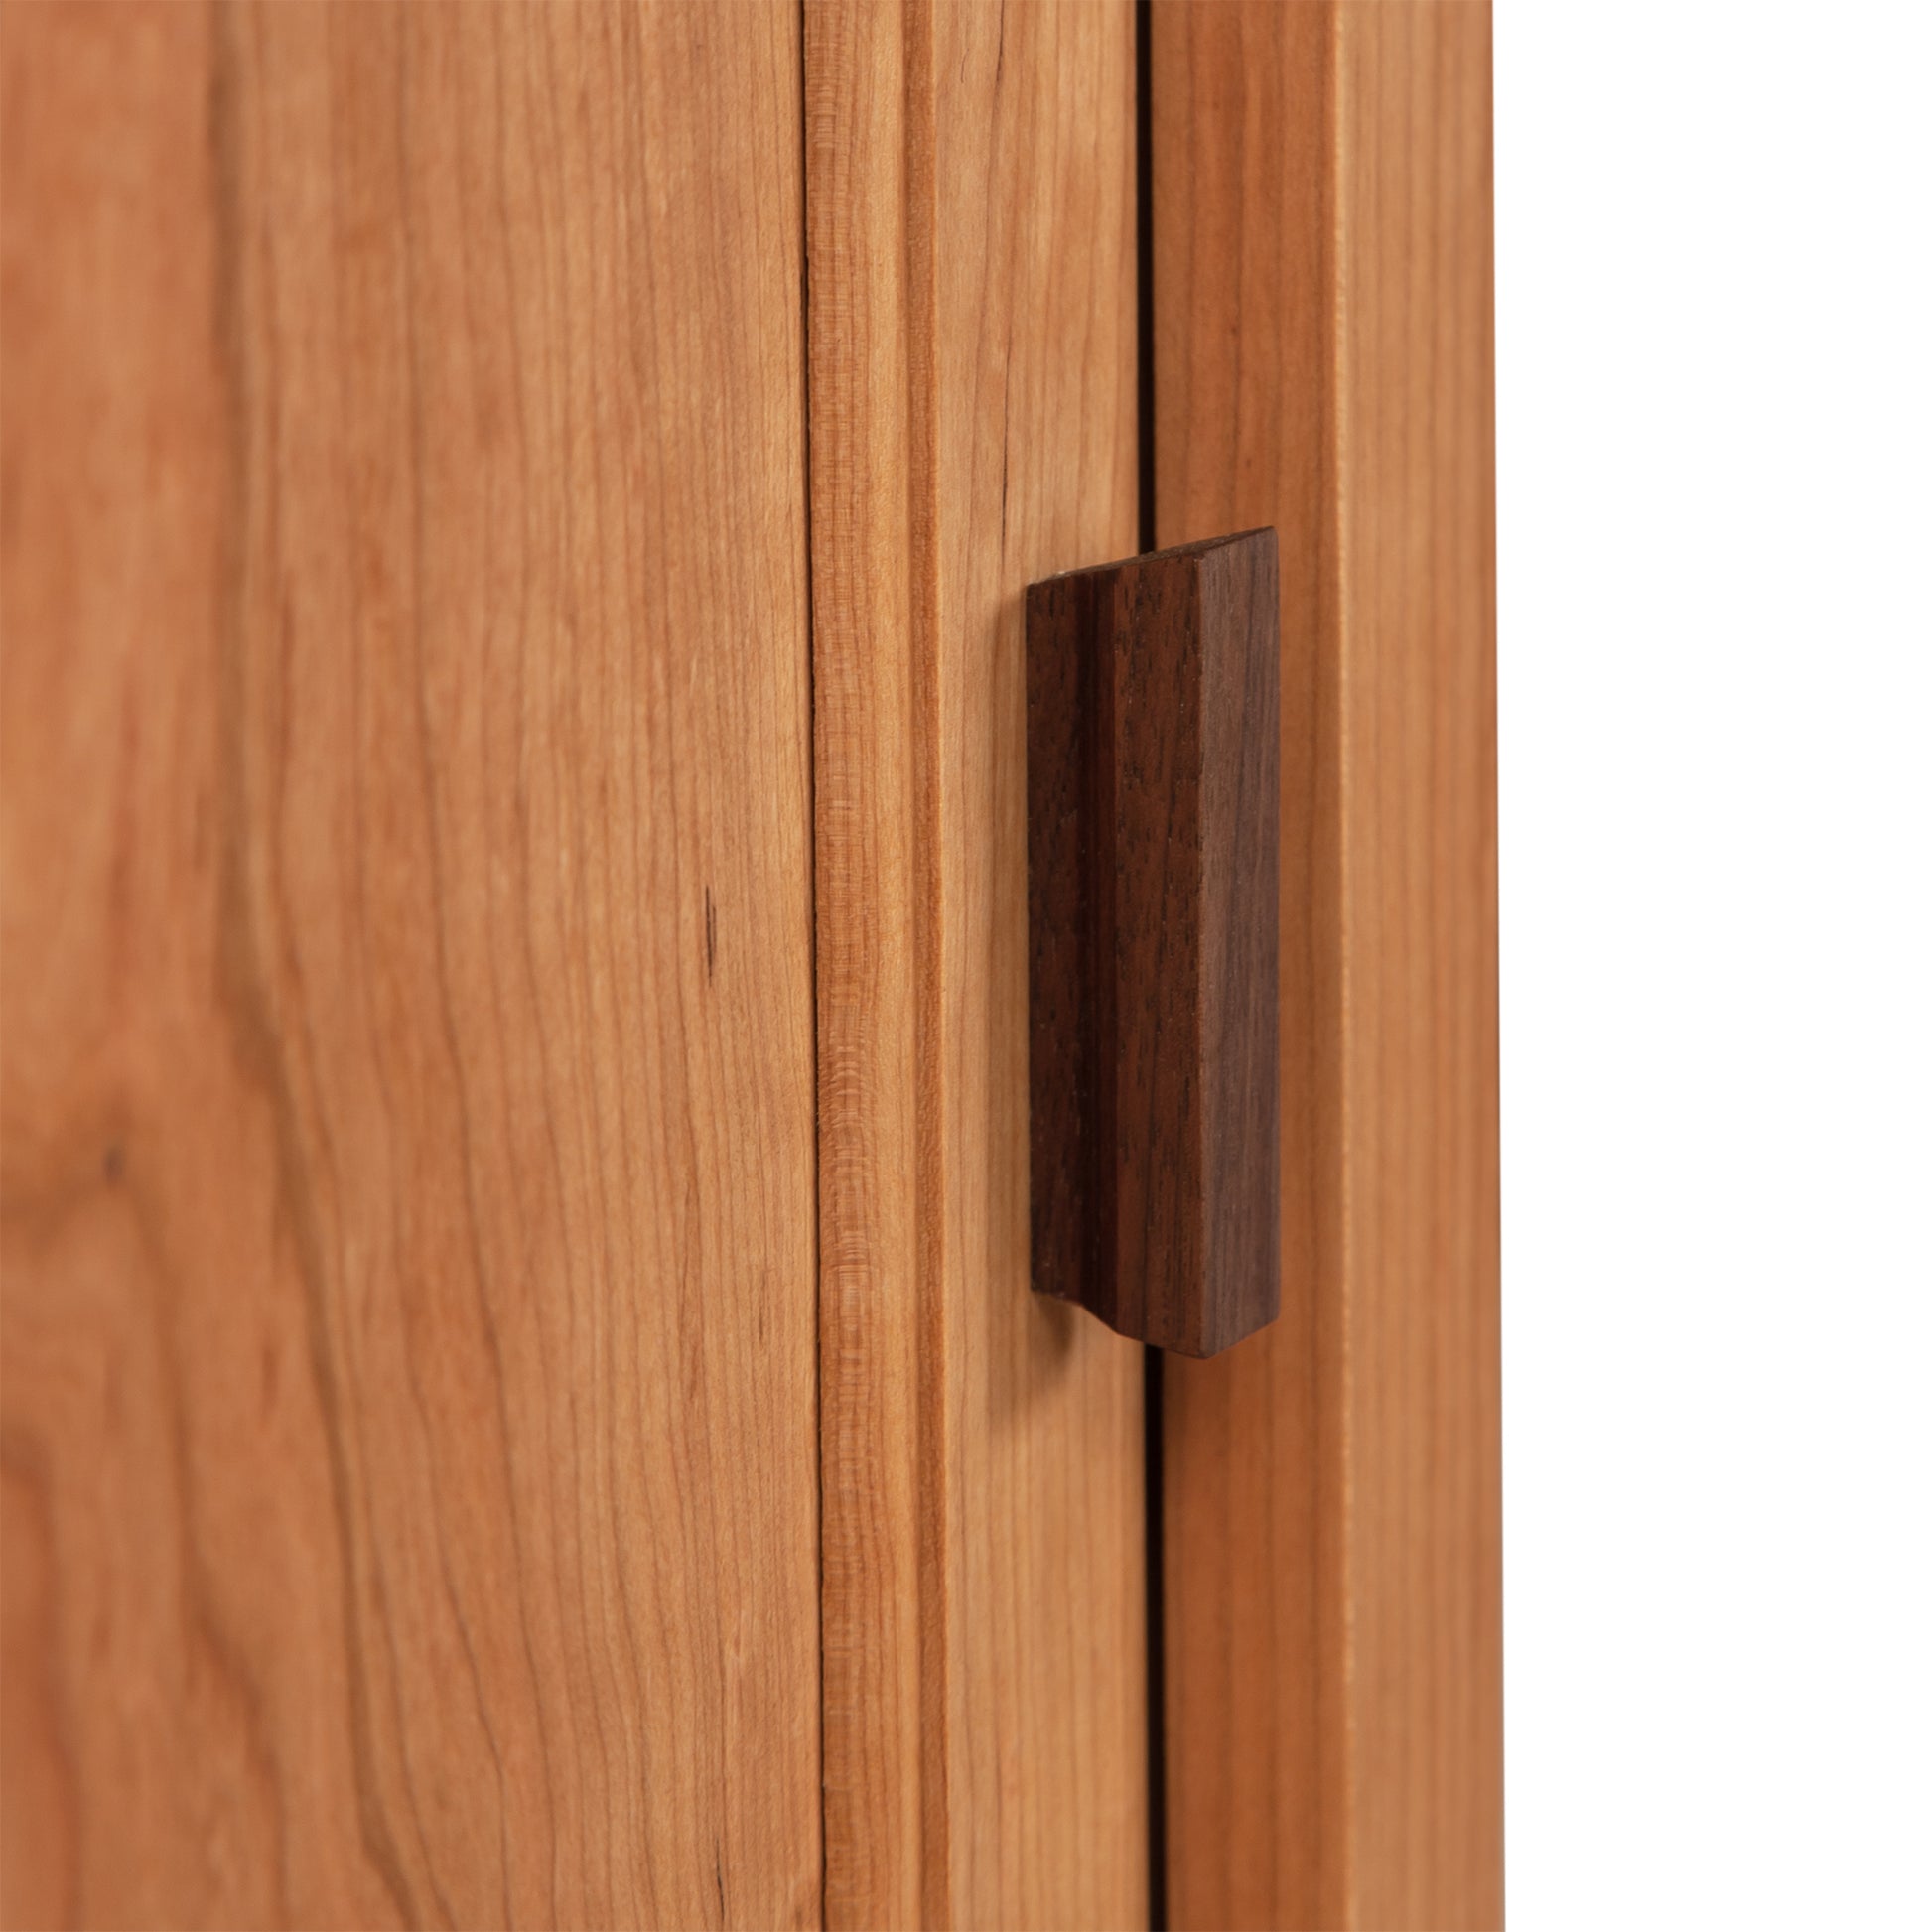 A close up of a Maple Corner Woodworks Andover Modern 1-Drawer Nightstand with Door wooden door handle.